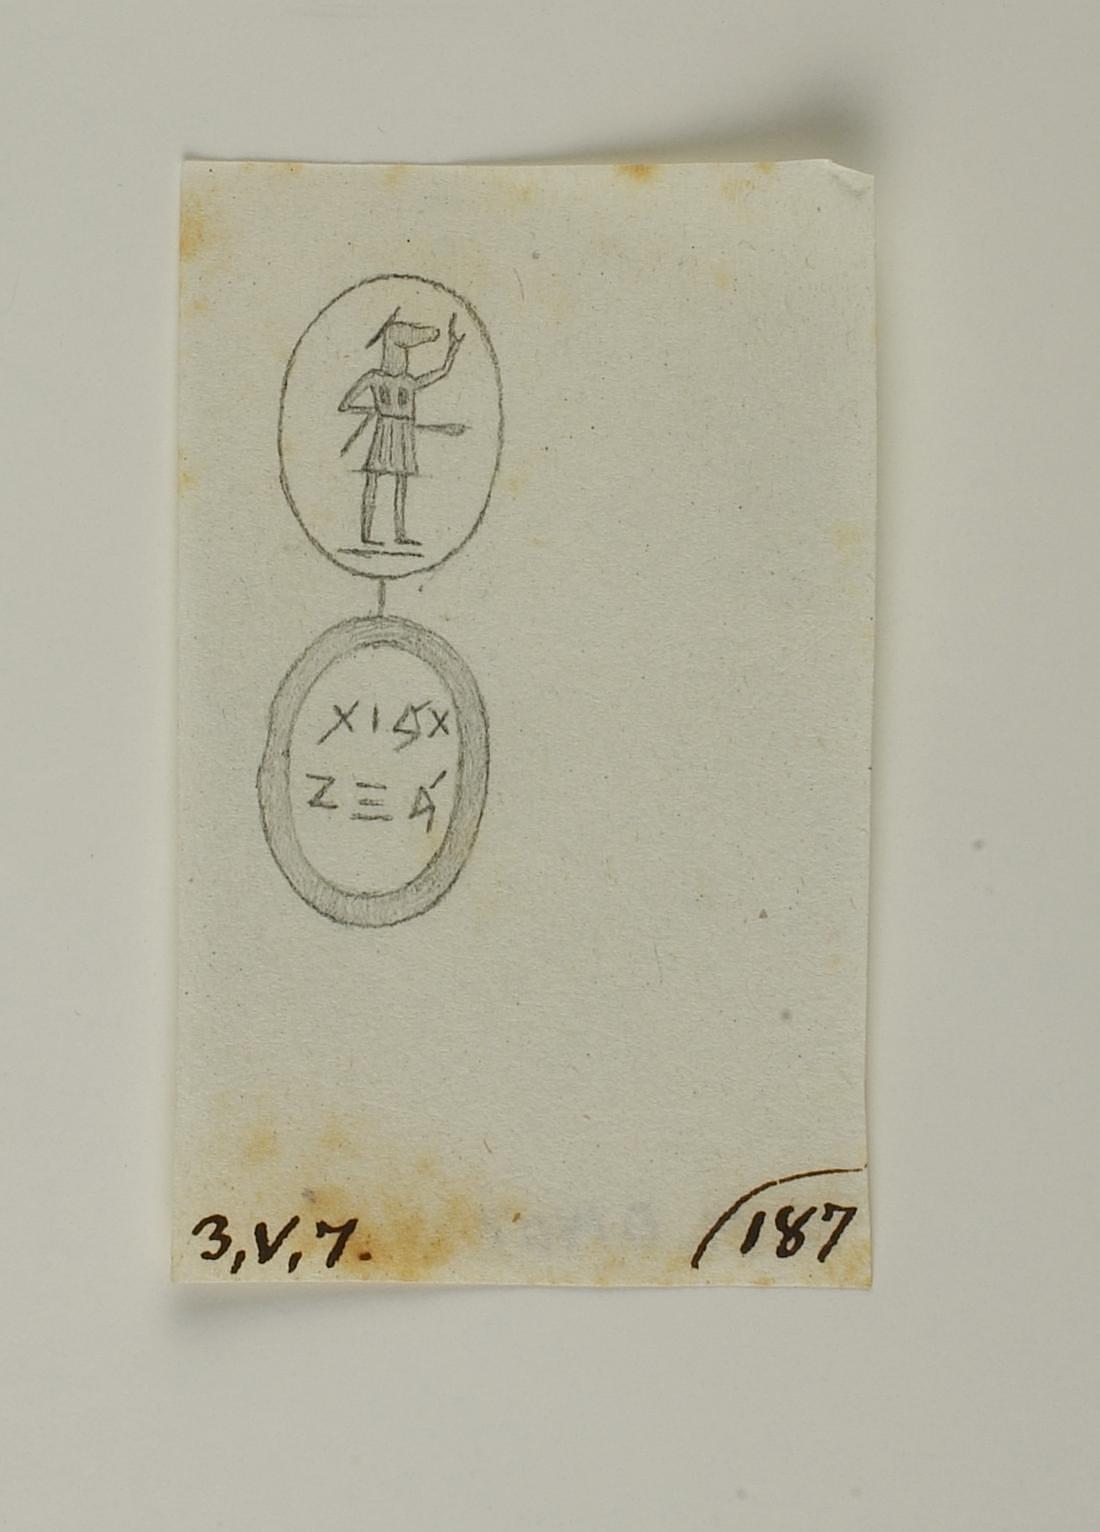 Anubis. Inscription, D1407